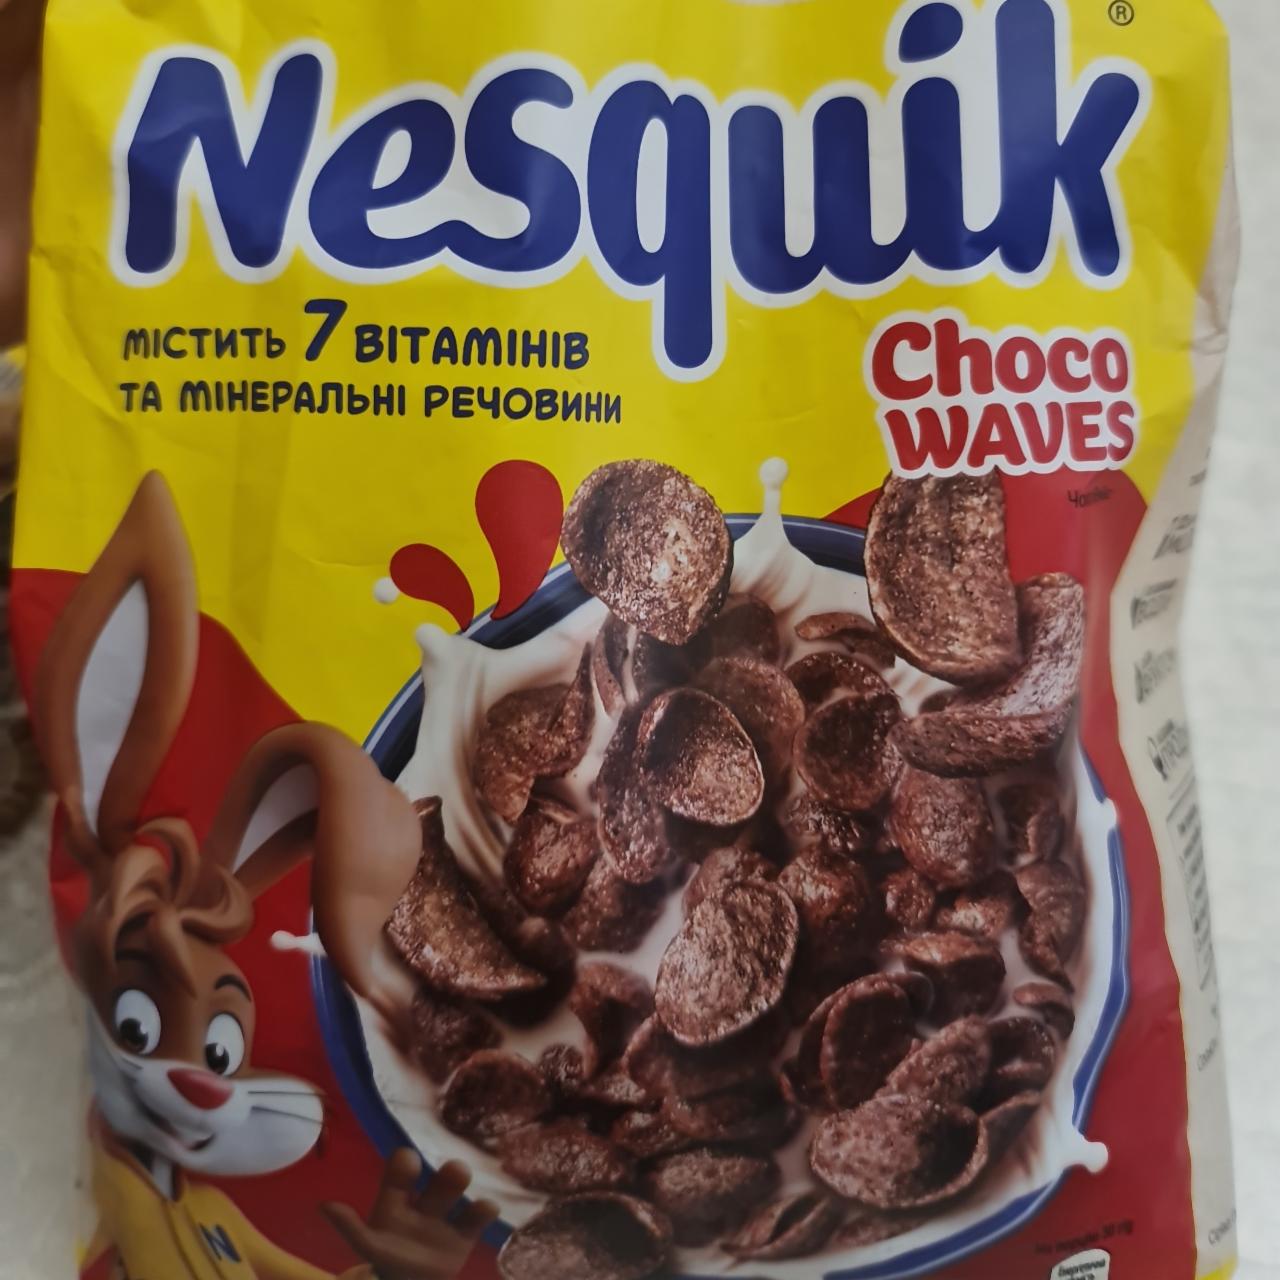 Фото - Готовый сухой завтрак Choco Waves Хлопья Nesquik